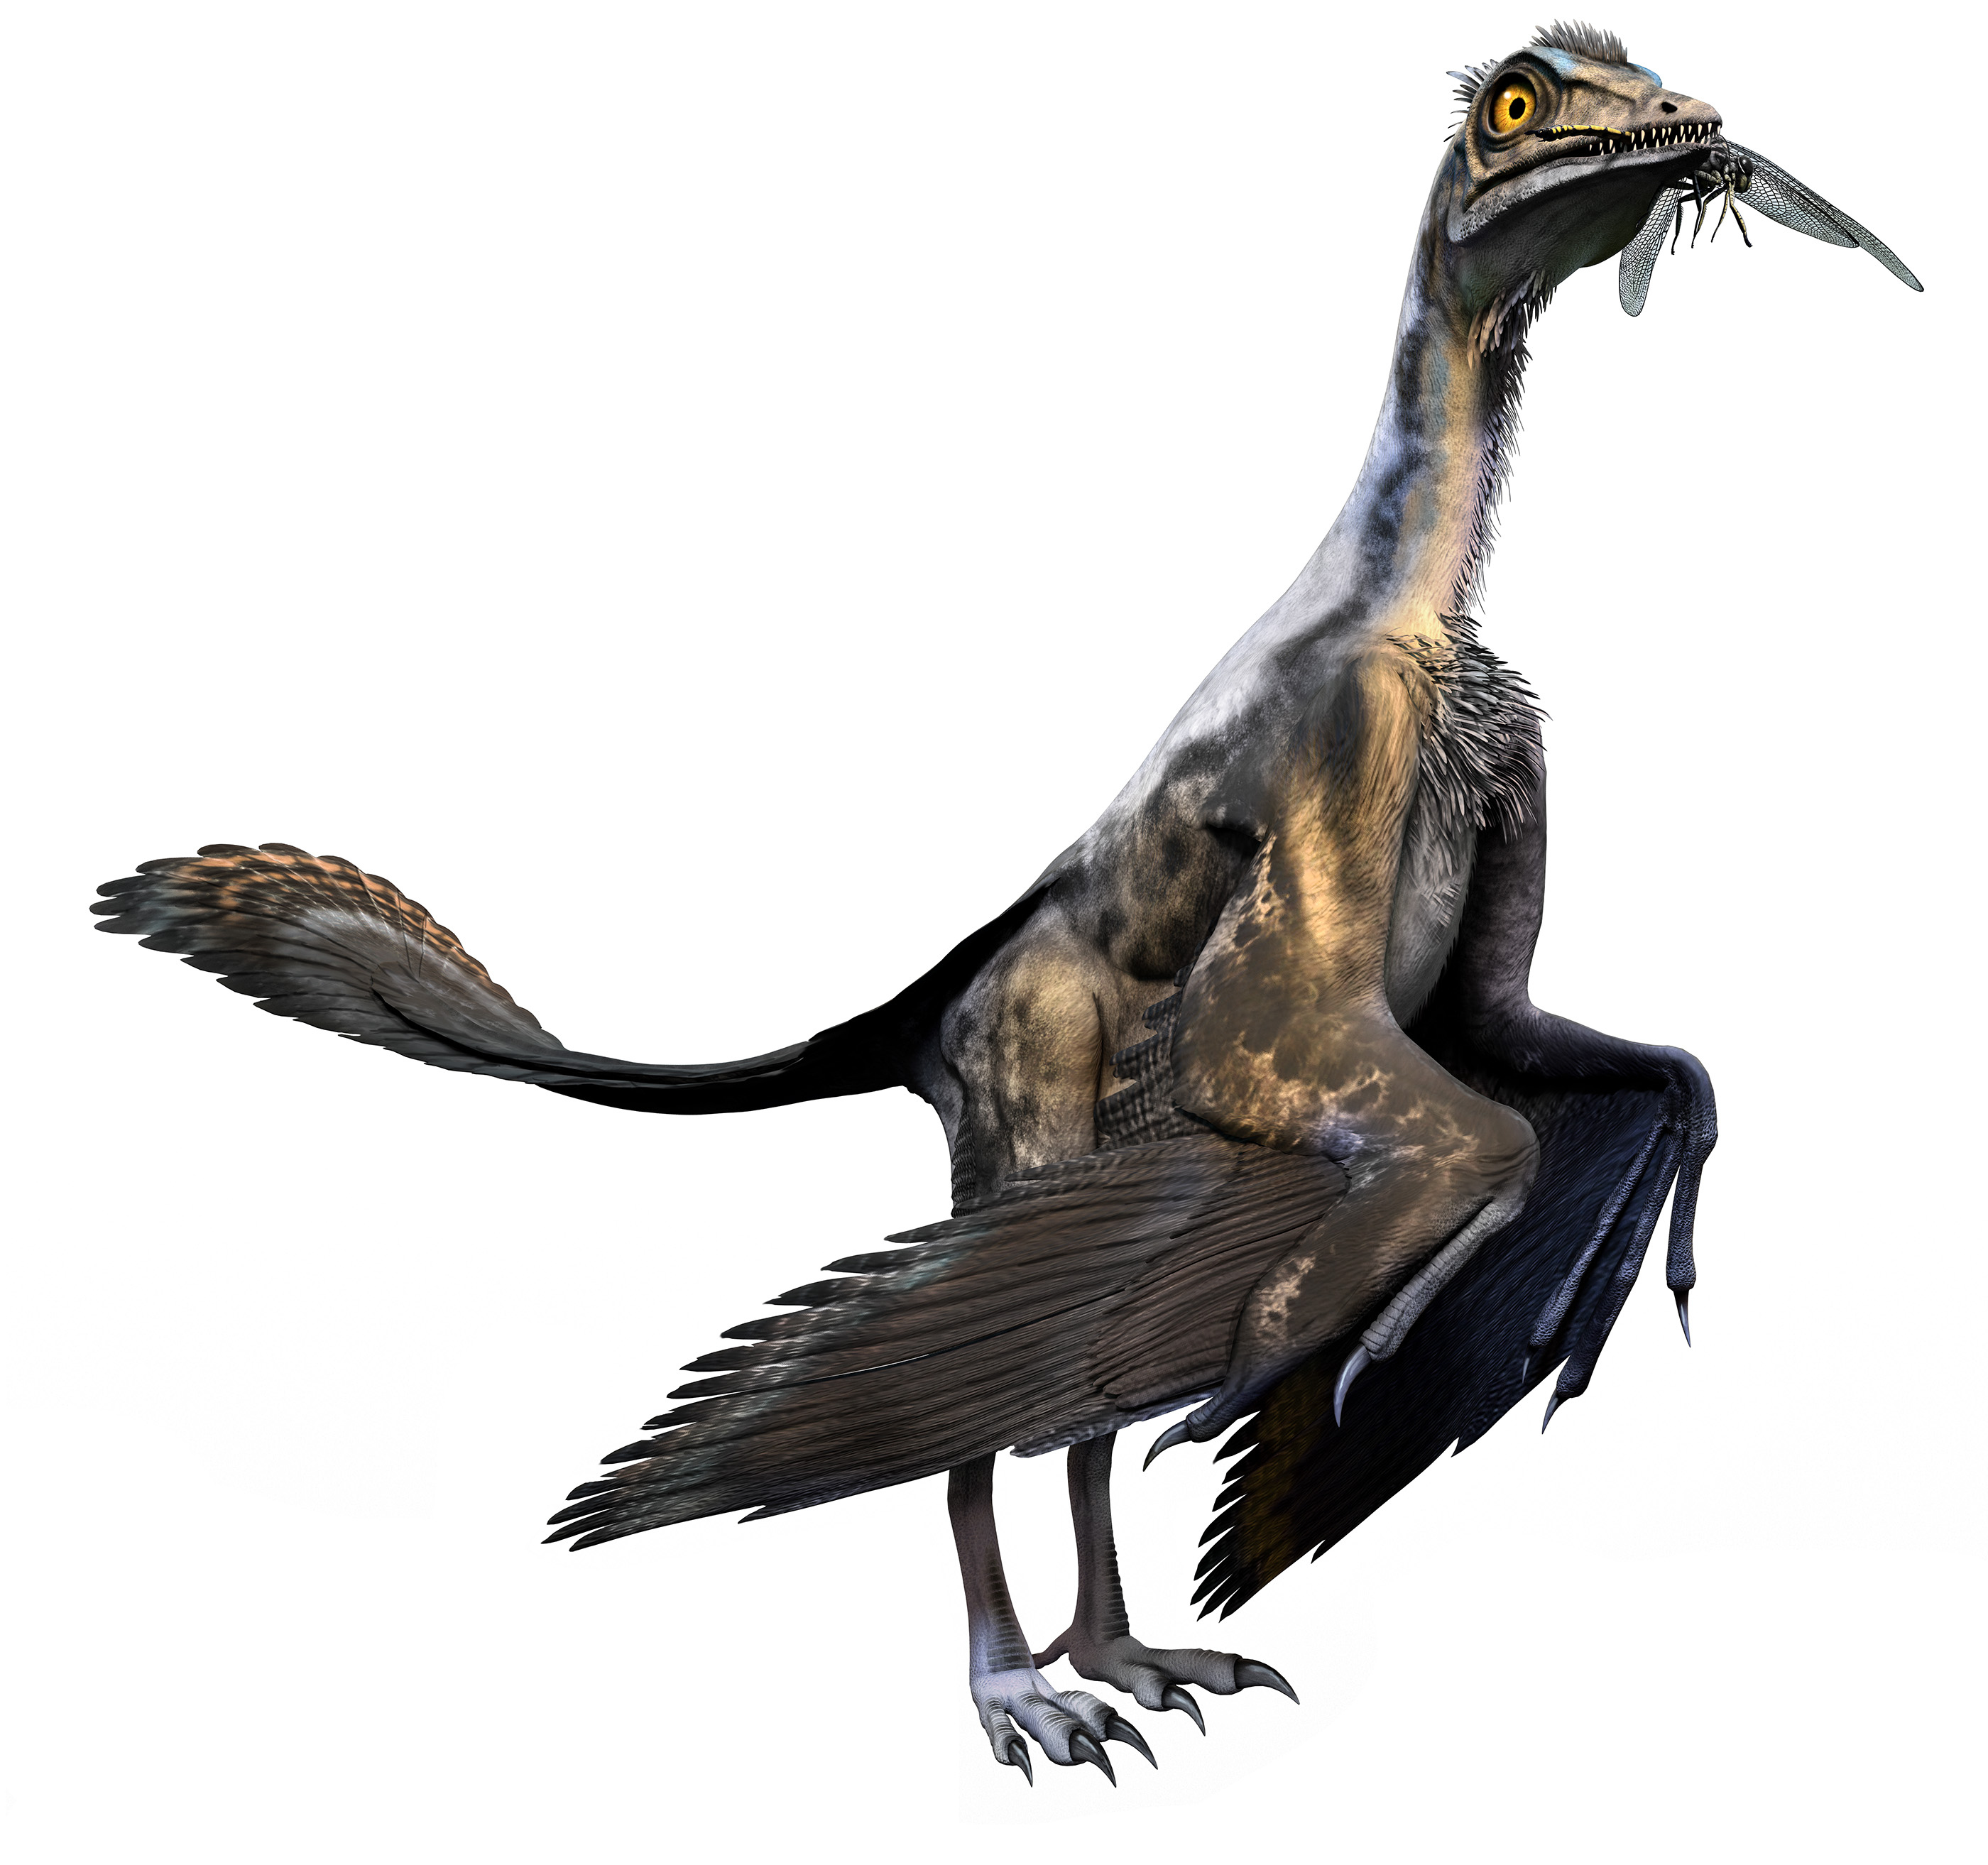 A bird ancestor, archaeopteryx (Warpaintcobra/iStock)